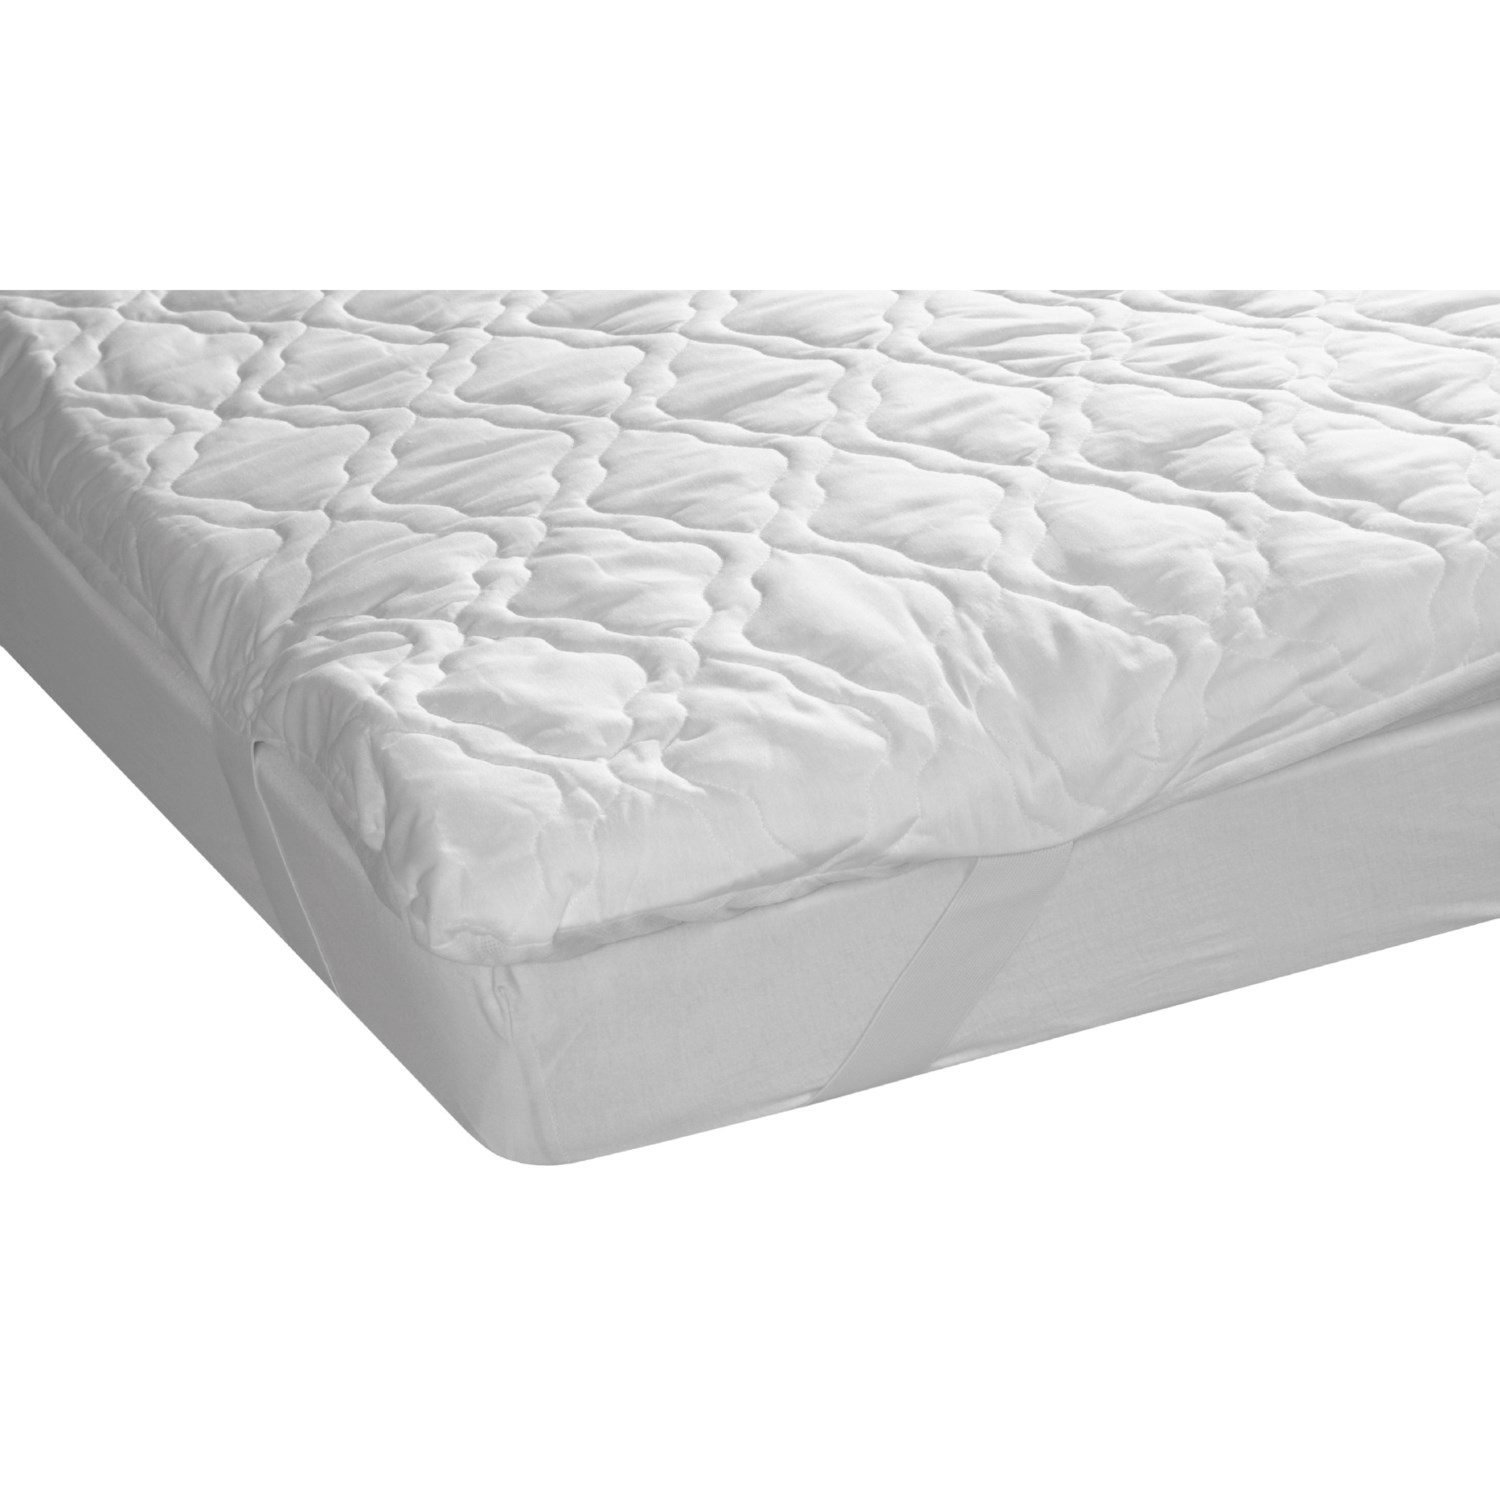 Orvis Comfort Cloud Sleeper Sofa Mattress Pad - Queen ...